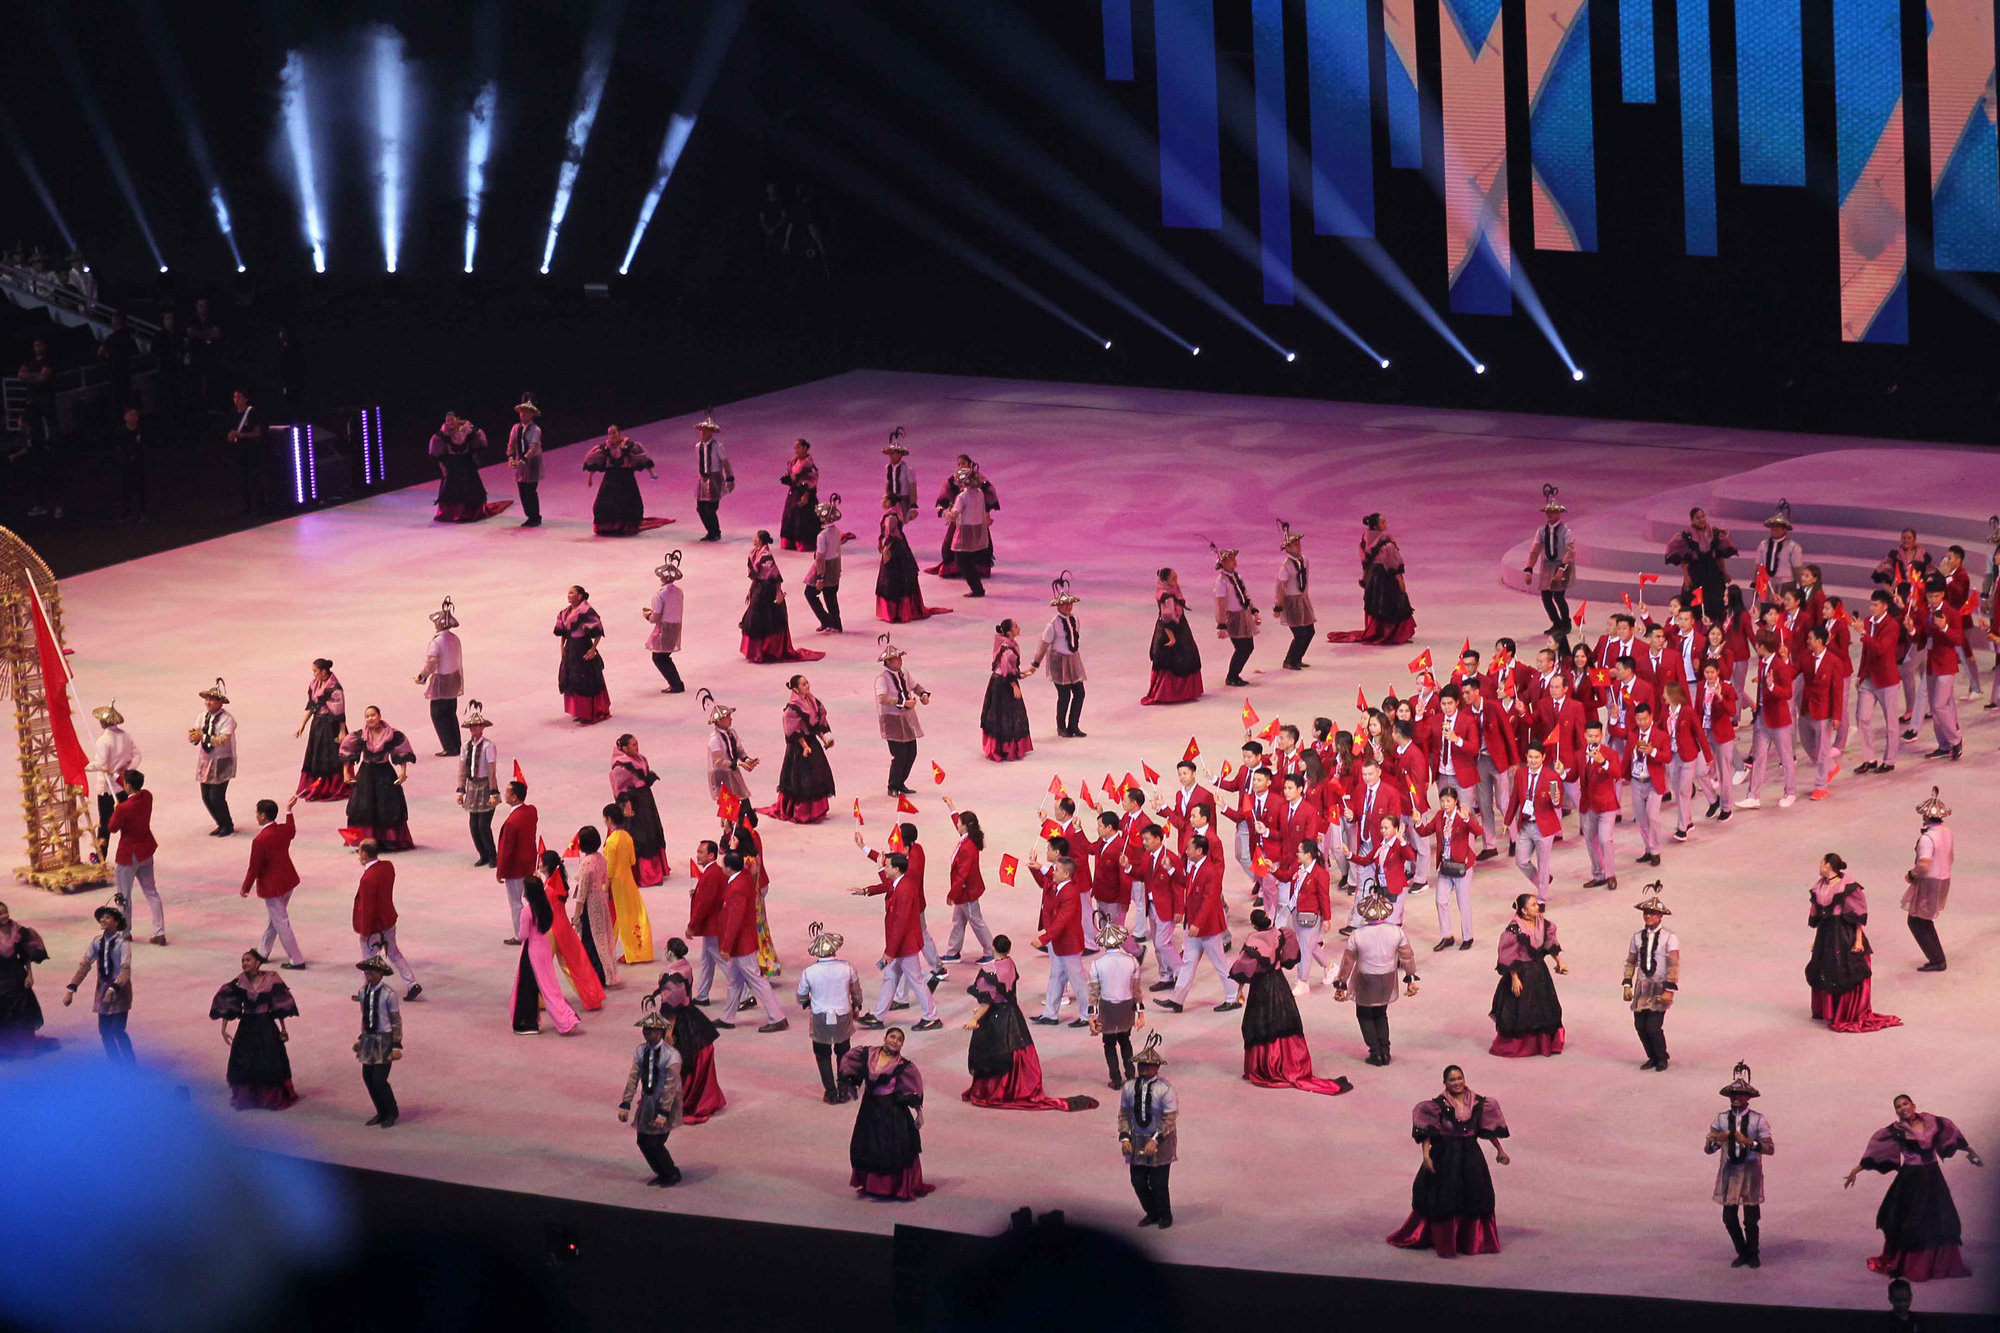 Sau thành công lớn tại SEA Games 30, Đoàn Thể thao Việt Nam được thưởng gần 25 tỷ đồng - Ảnh 1.